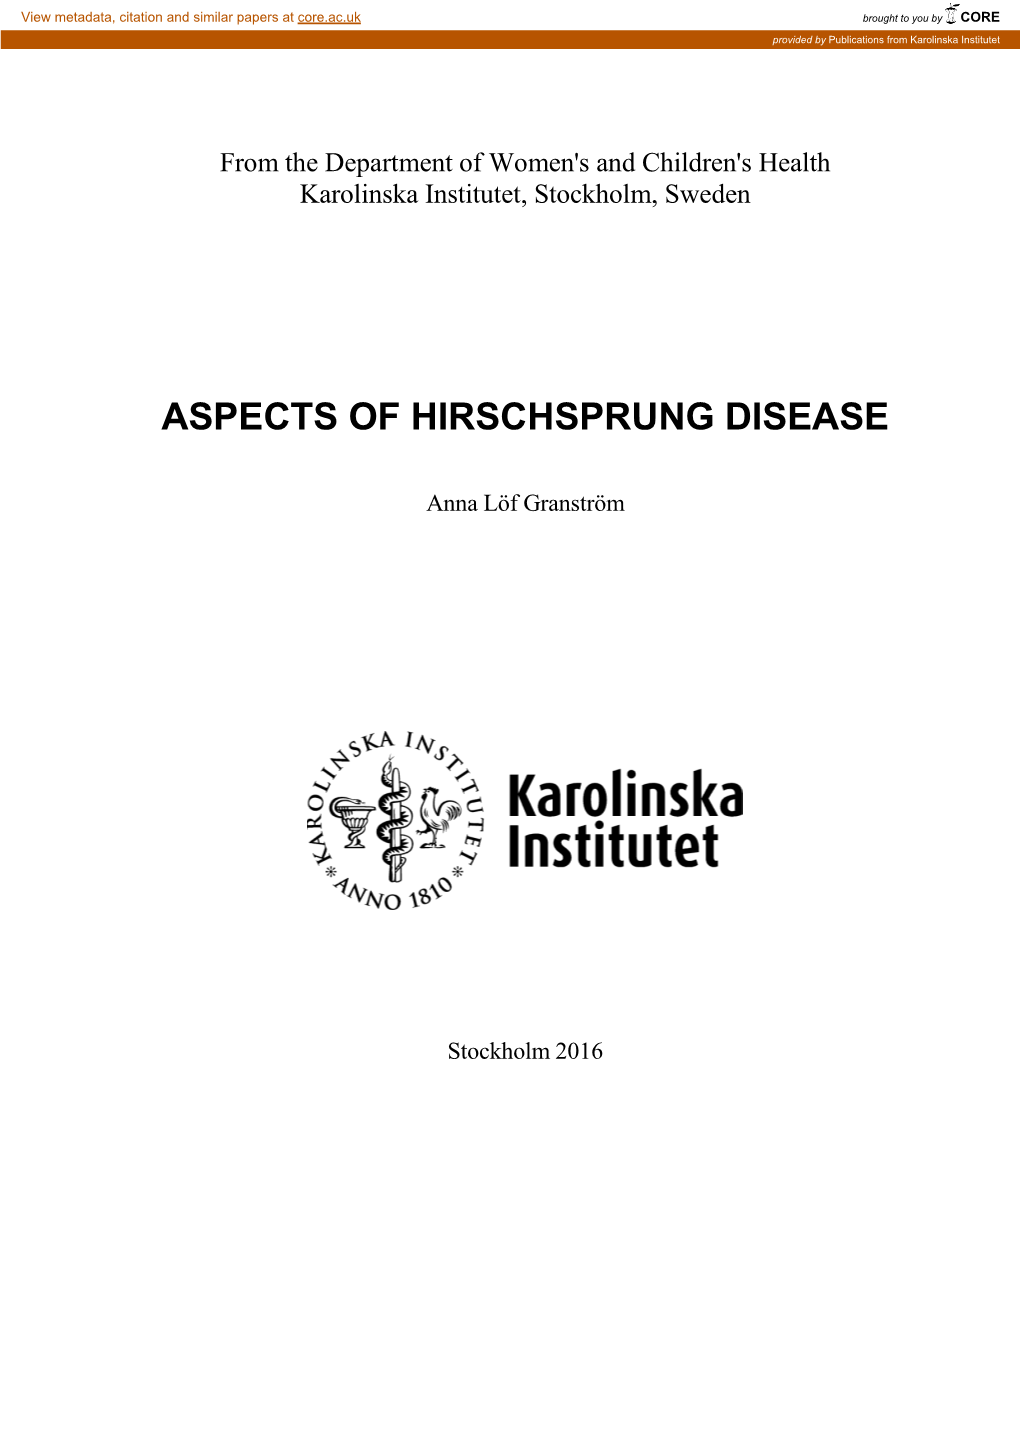 Aspects of Hirschsprung Disease